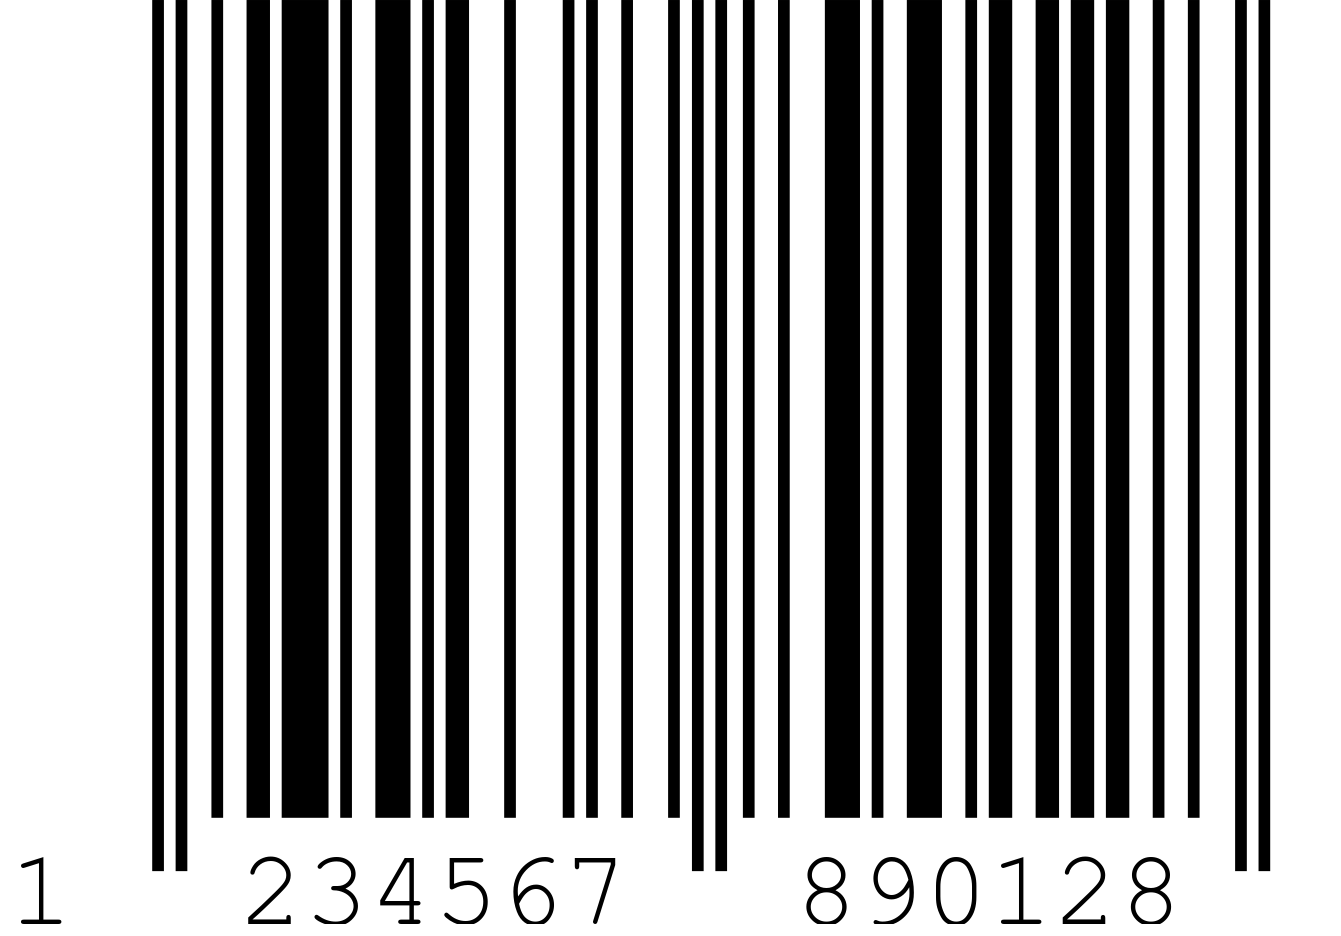 Bei tag Original / Barcodes / ean-13